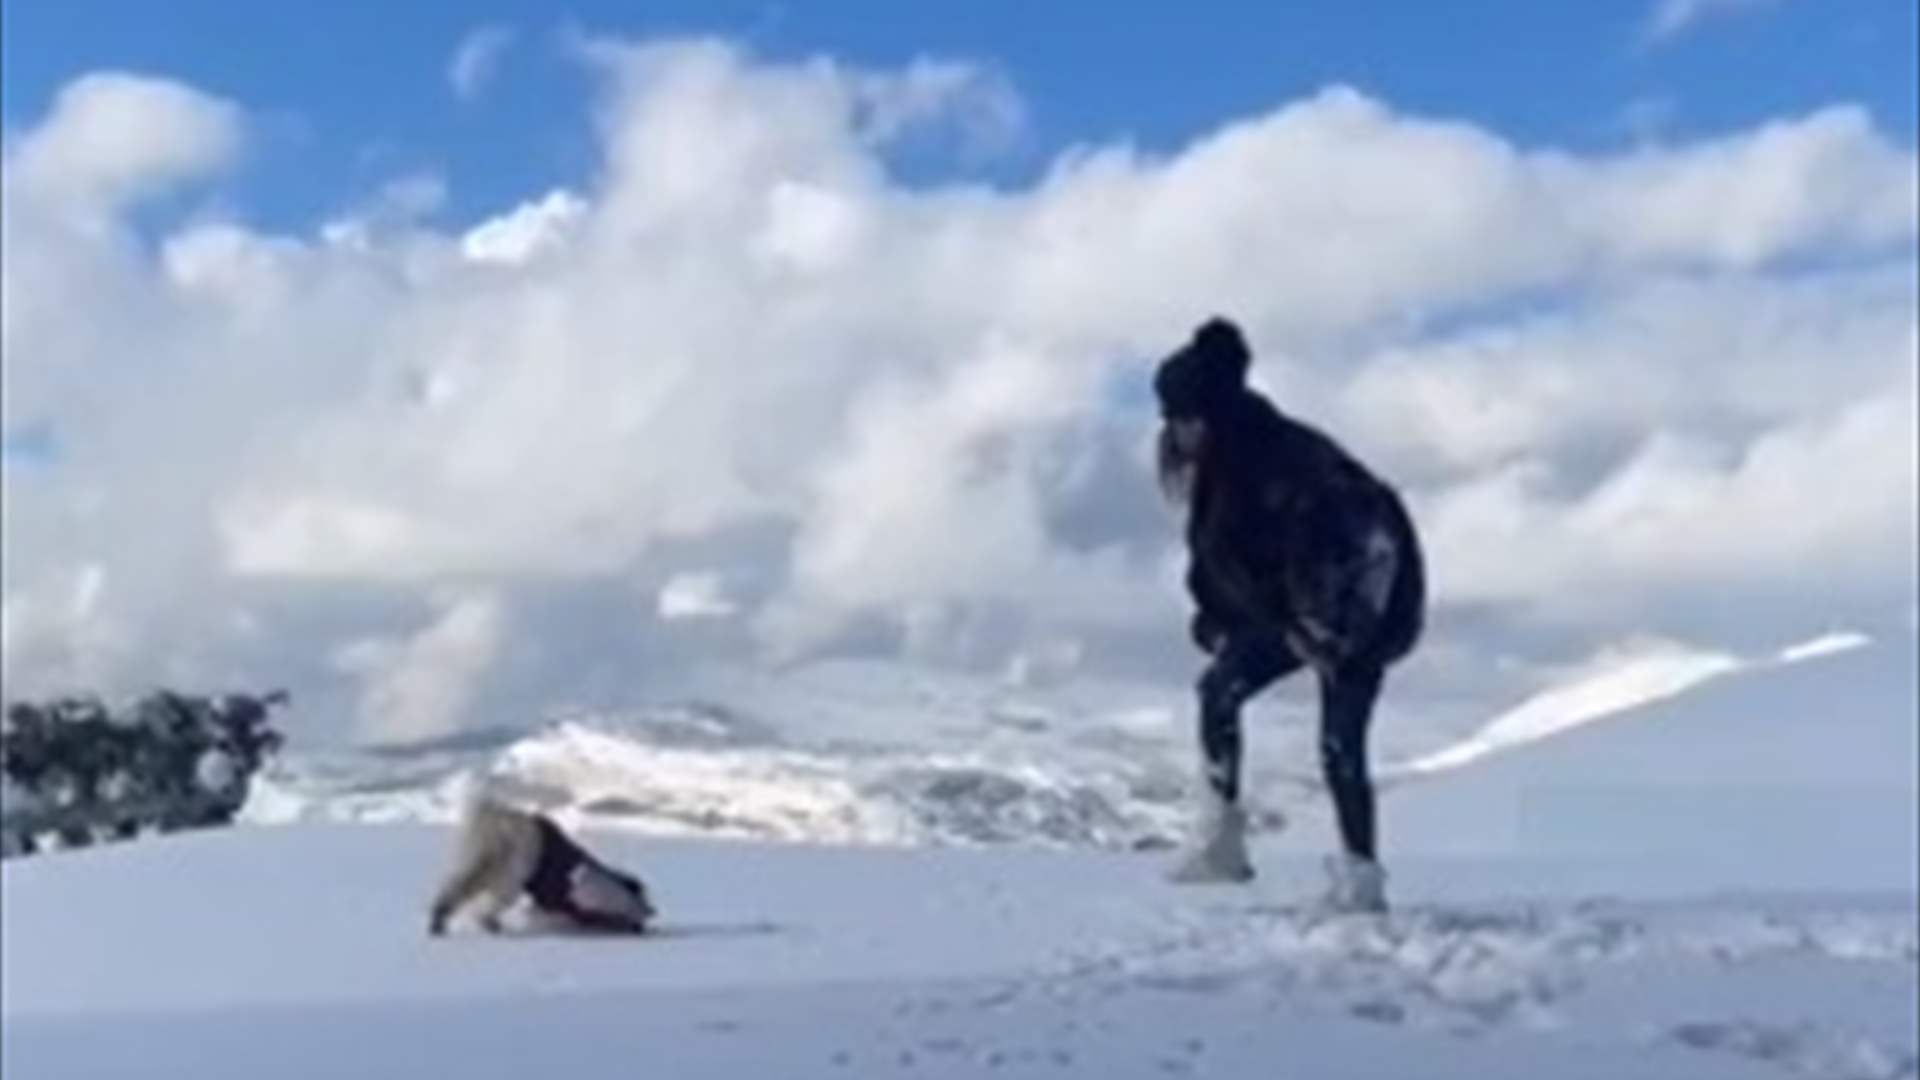 اليسا تستمتع بثلوج لبنان في أوّل ظهور لها بعد العمليّة في يدها (فيديو)